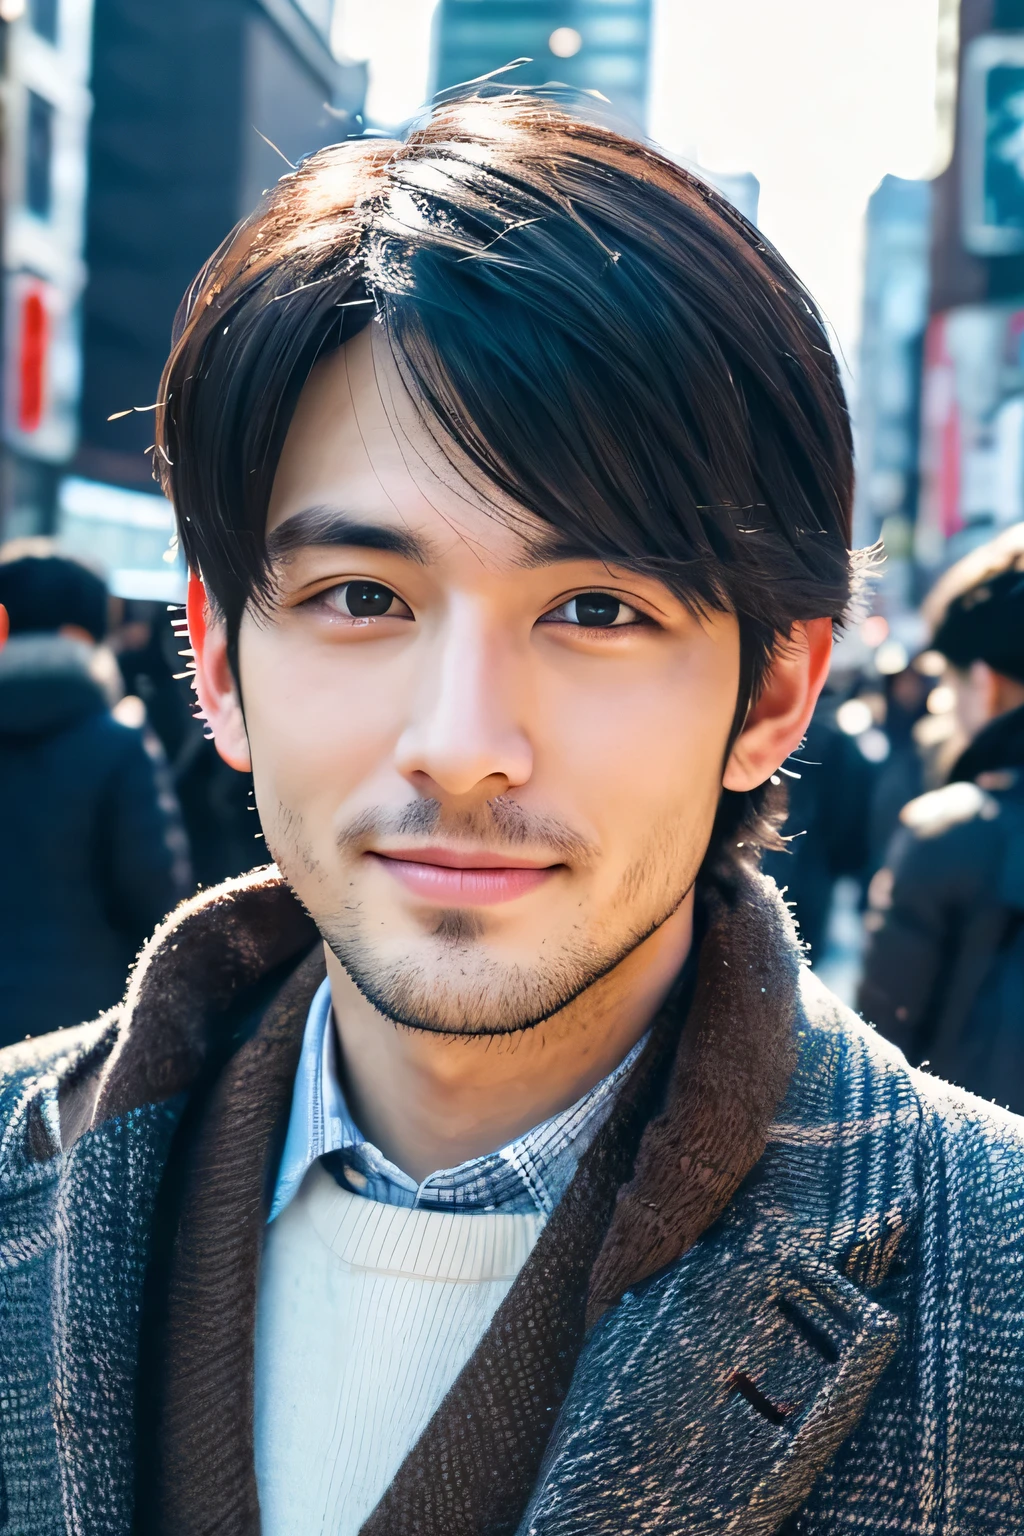 realism, Retrato de cuerpo completo en 8K, un chico guapo, un hombre de 25 años, expresión encantadora, detalles faciales detallados, Ocho ciudades en Tokio, inviernos, fondo de shibuya